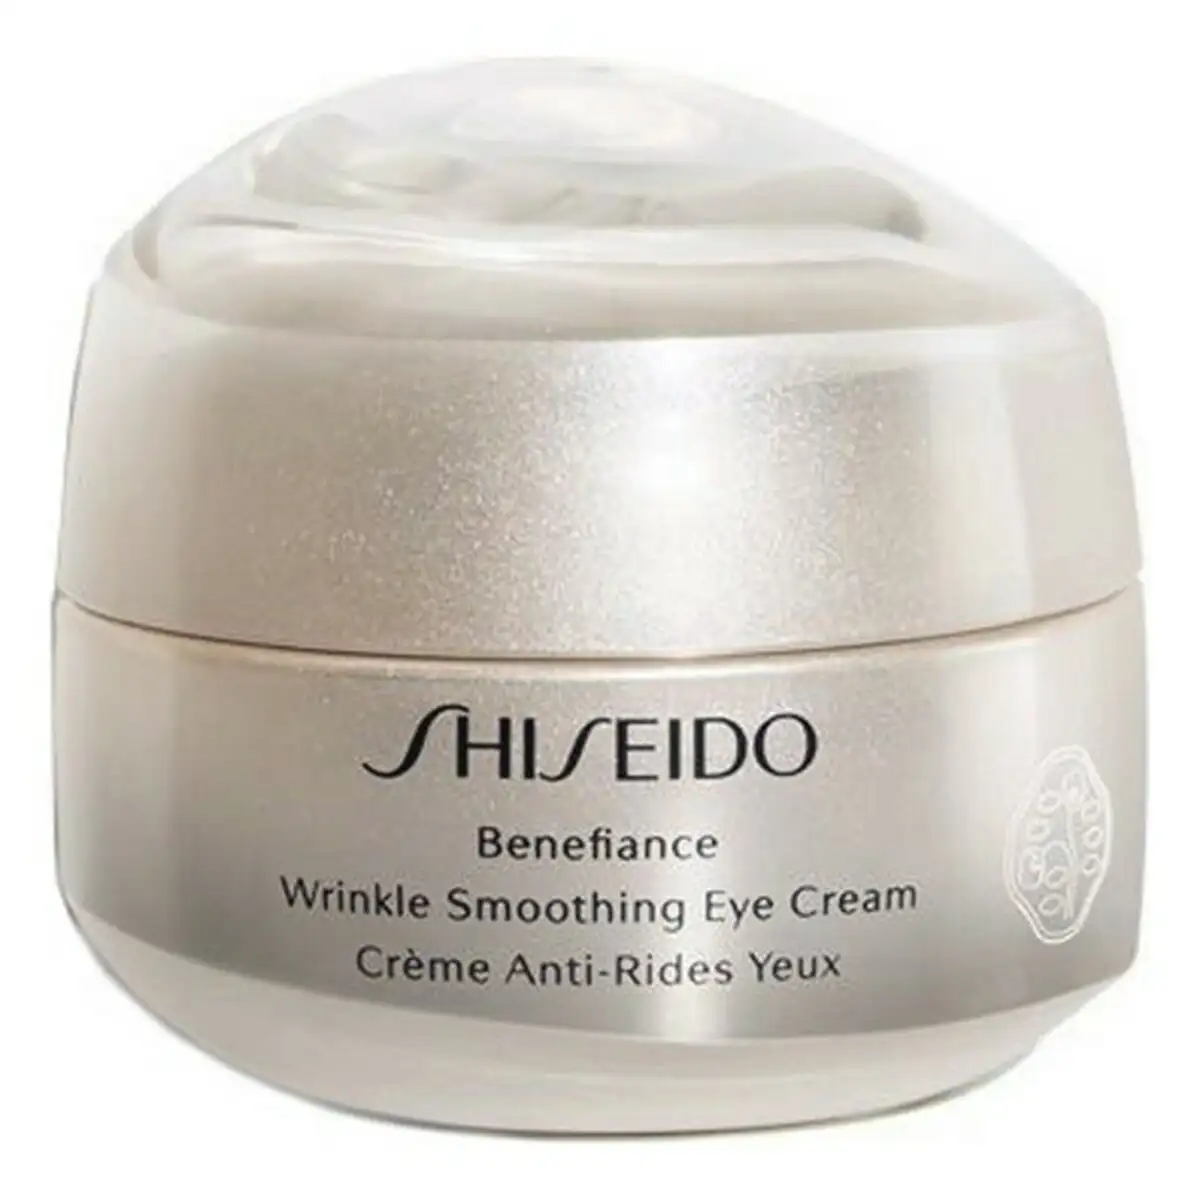 Contour des yeux benefiance wrinkle smoothing shiseido 15 ml _1927. DIAYTAR SENEGAL - Là où Chaque Produit est une Trouvaille Unique. Découvrez notre boutique en ligne et trouvez des articles qui vous distinguent par leur originalité.